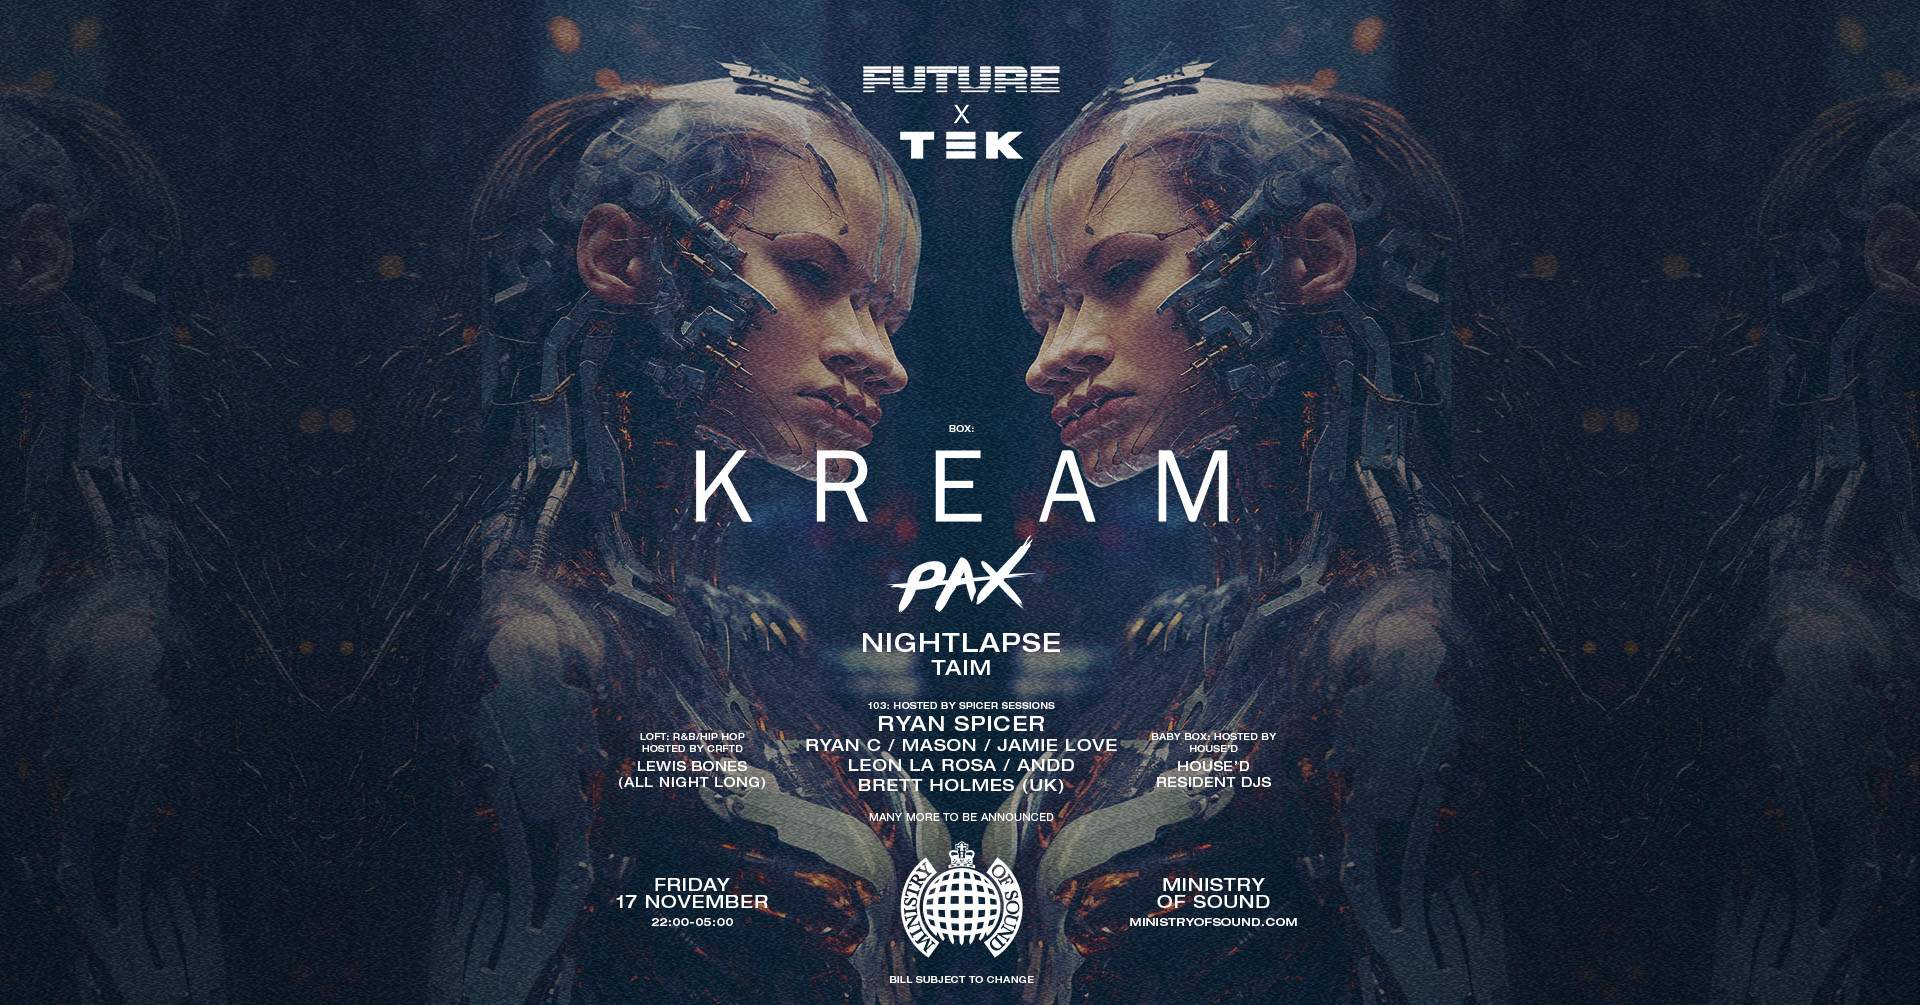 FUTURE X TEK presents KREAM - Página frontal